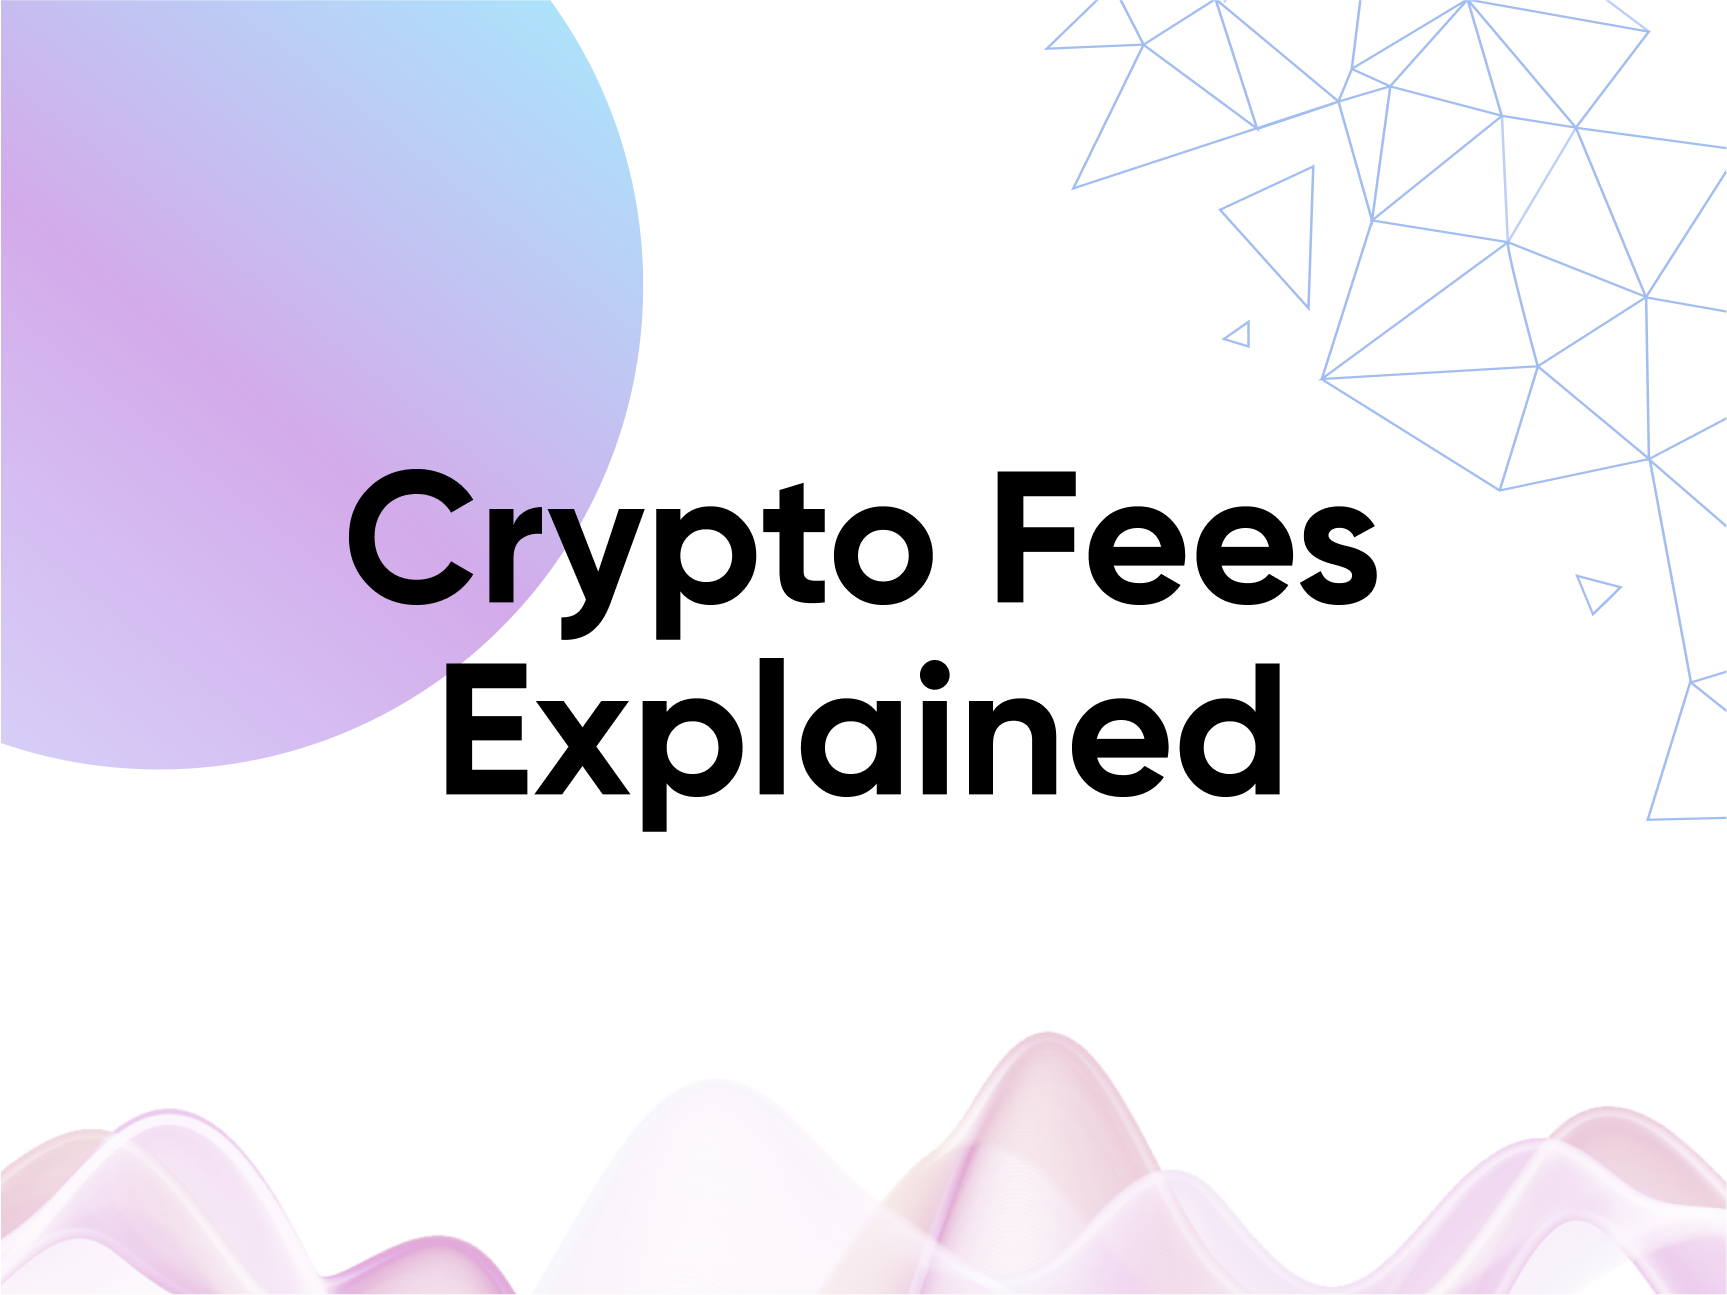 fees buying crypto